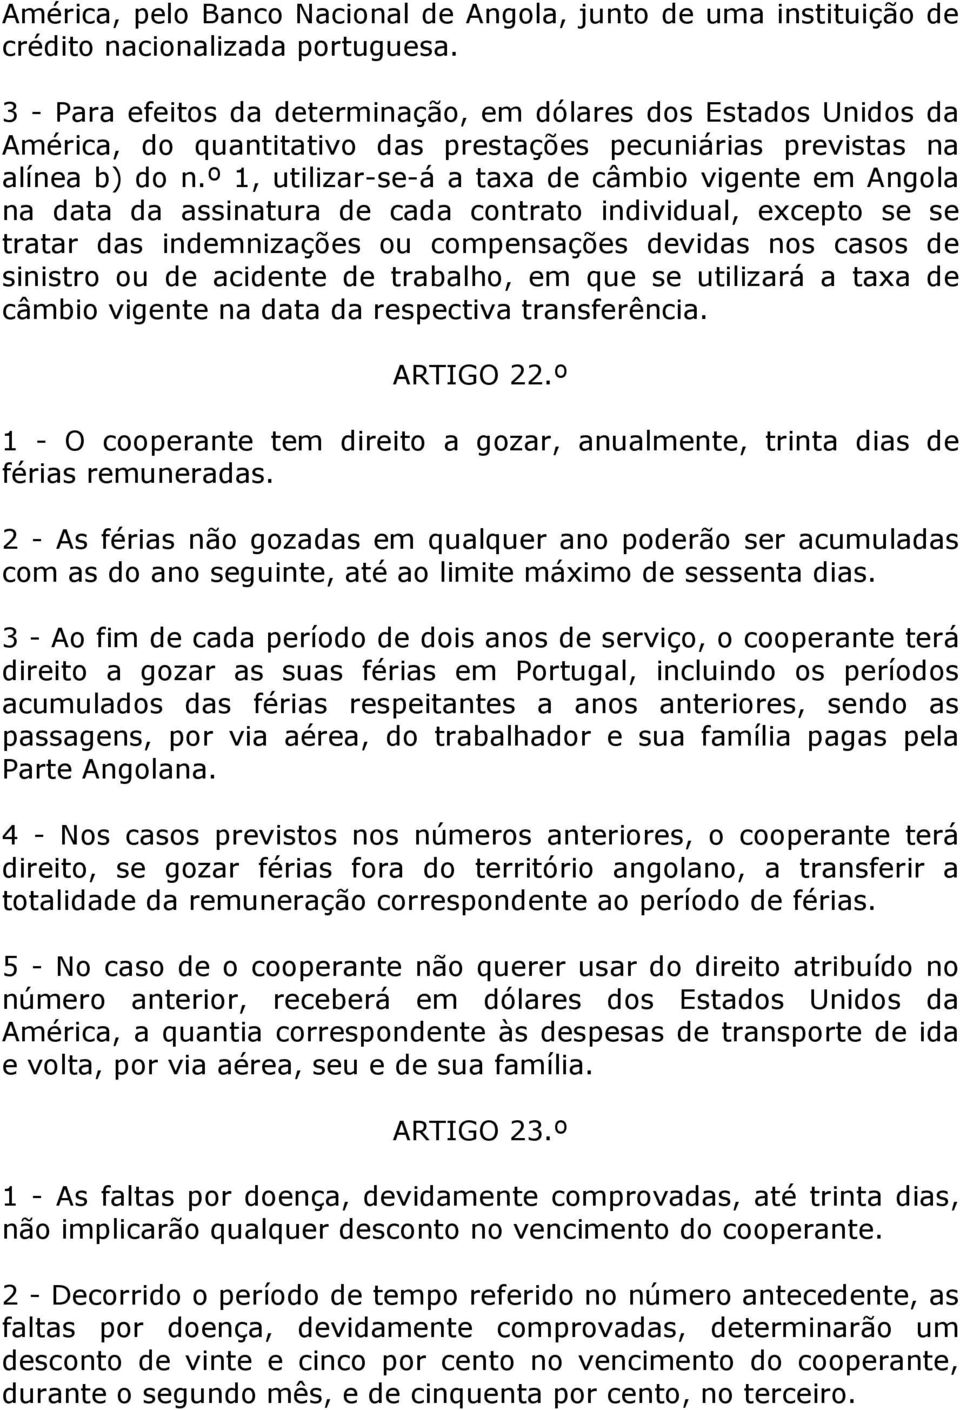 º 1, utilizar-se-á a taxa de câmbio vigente em Angola na data da assinatura de cada contrato individual, excepto se se tratar das indemnizações ou compensações devidas nos casos de sinistro ou de